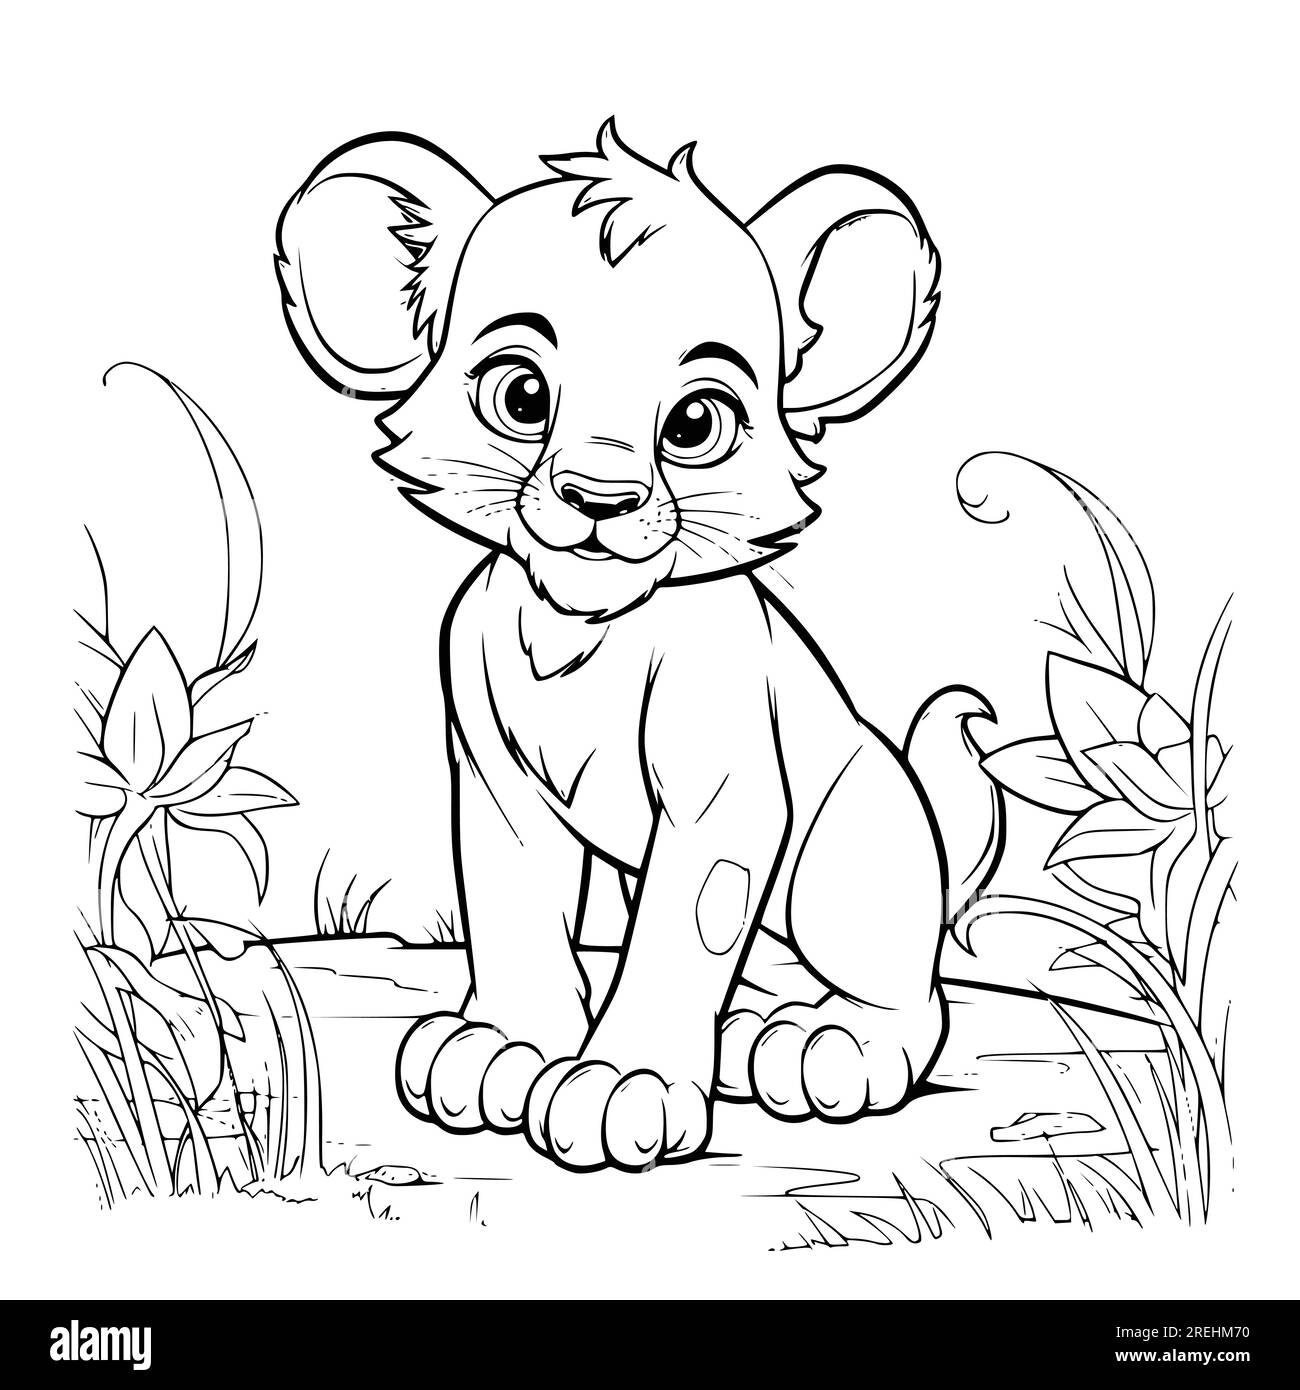 Disegno di pagine da colorare cuccioli di leone per bambini